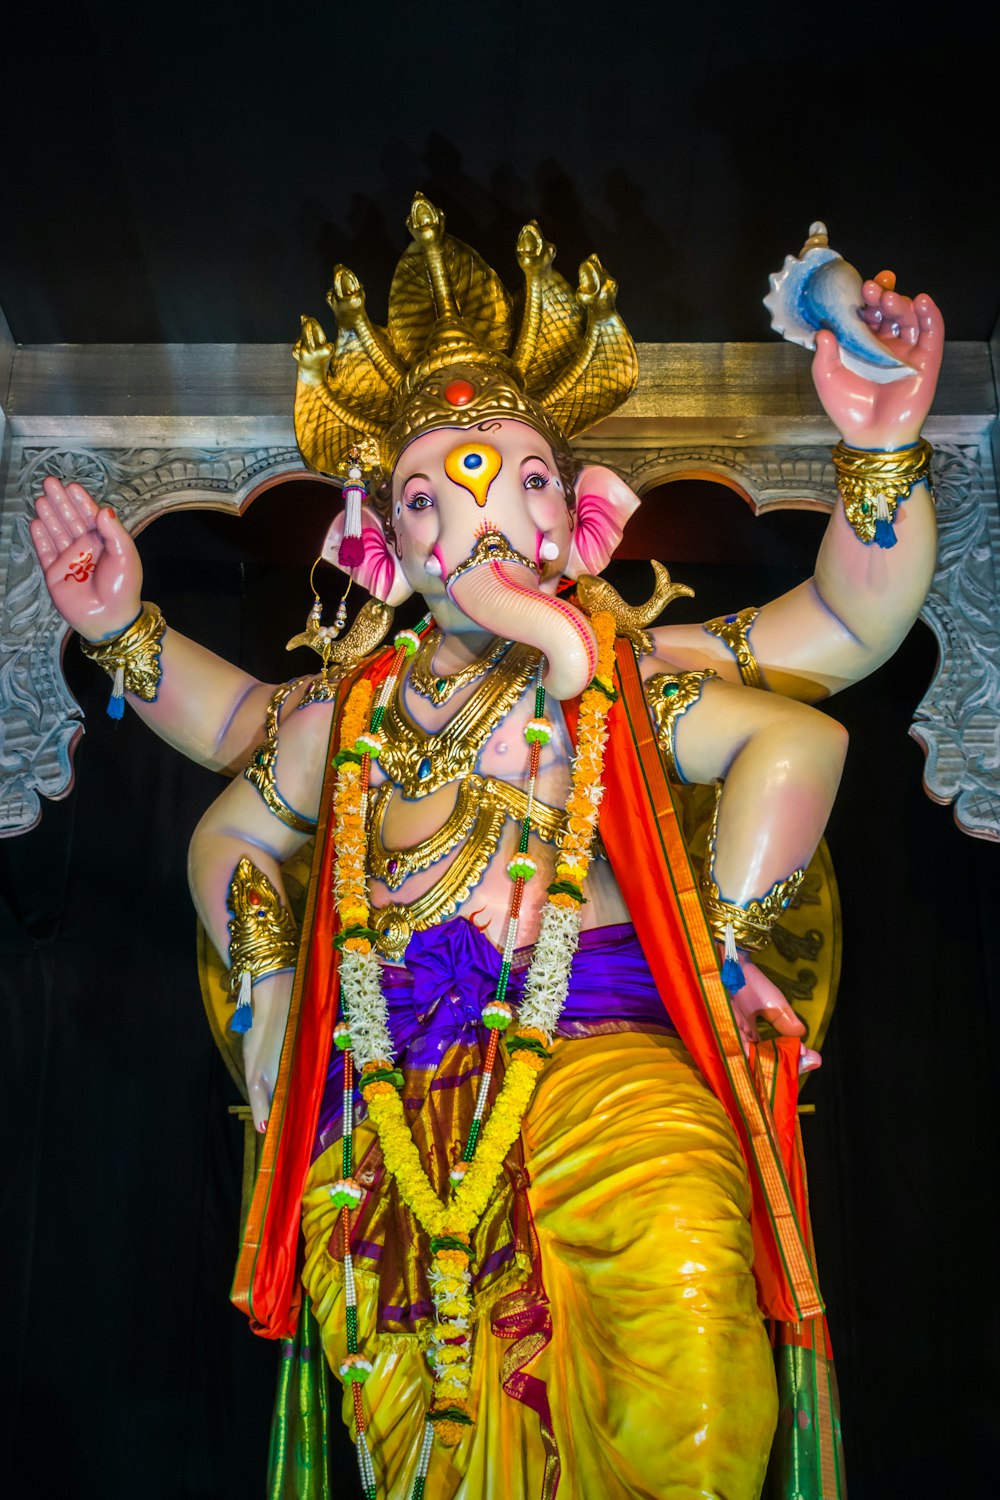 Una statua di un dio indiano con le mani in aria